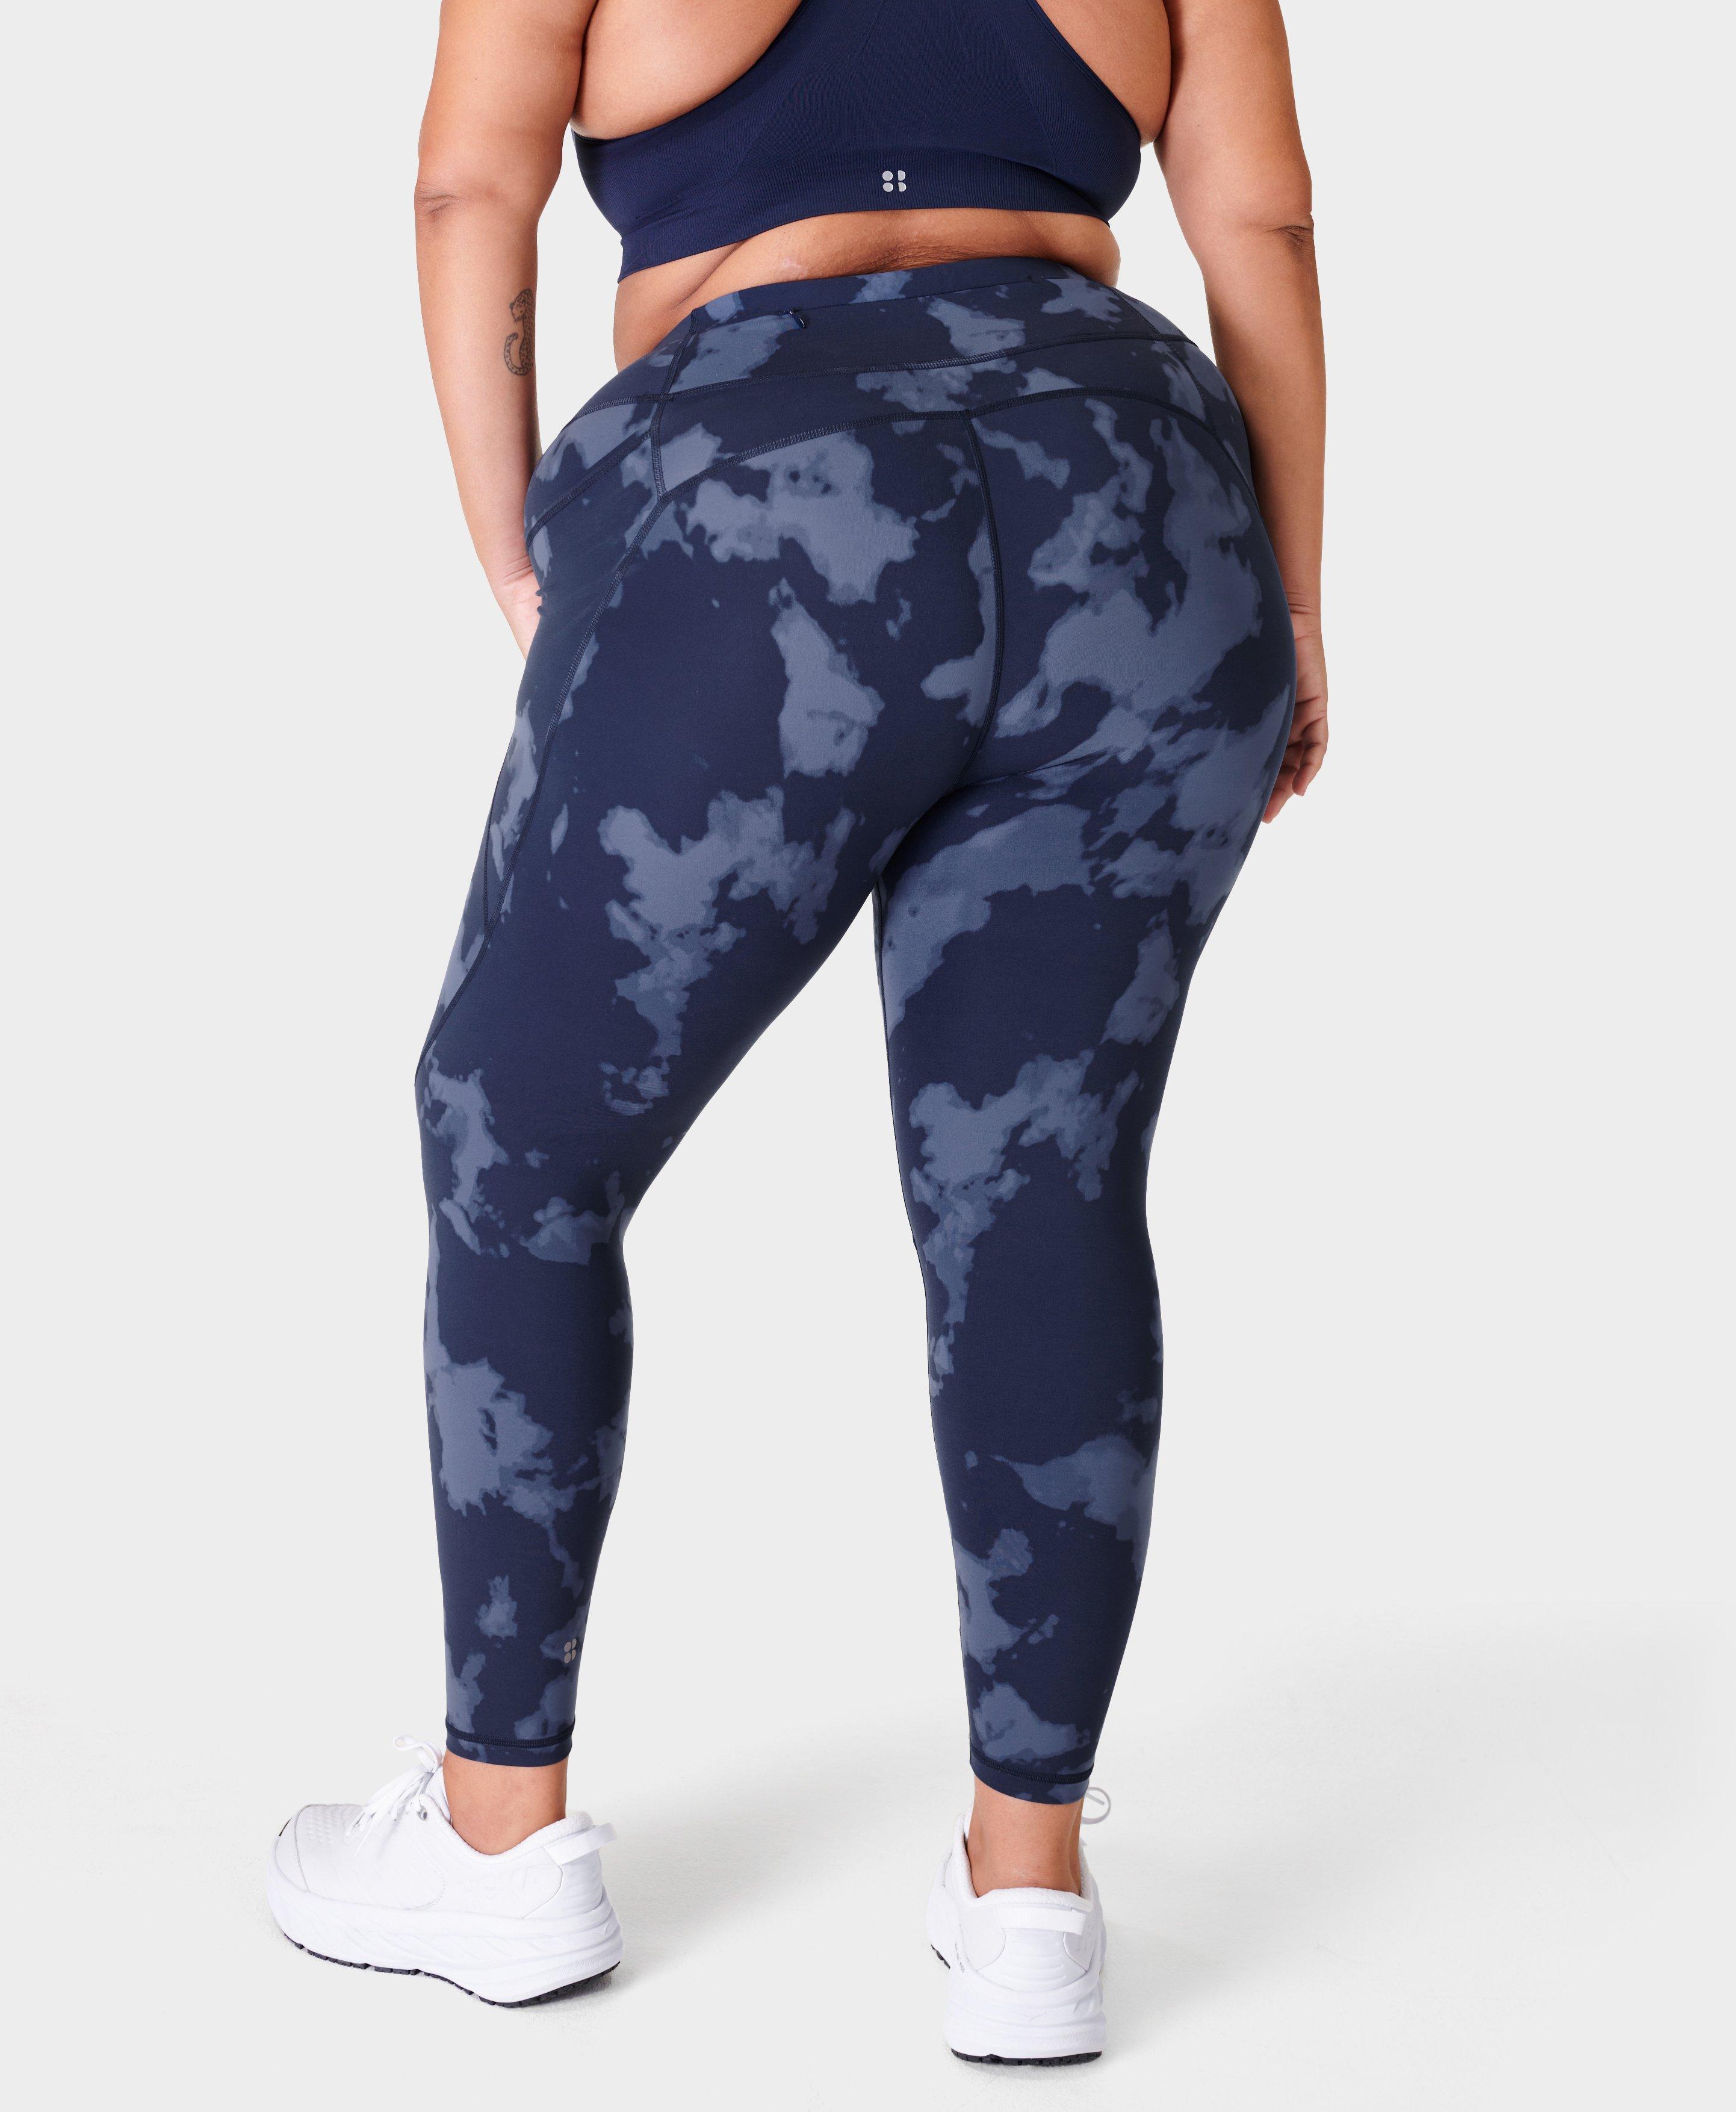 Yoga Pants 24/7 on X: #yogapants #workout #gym  / X